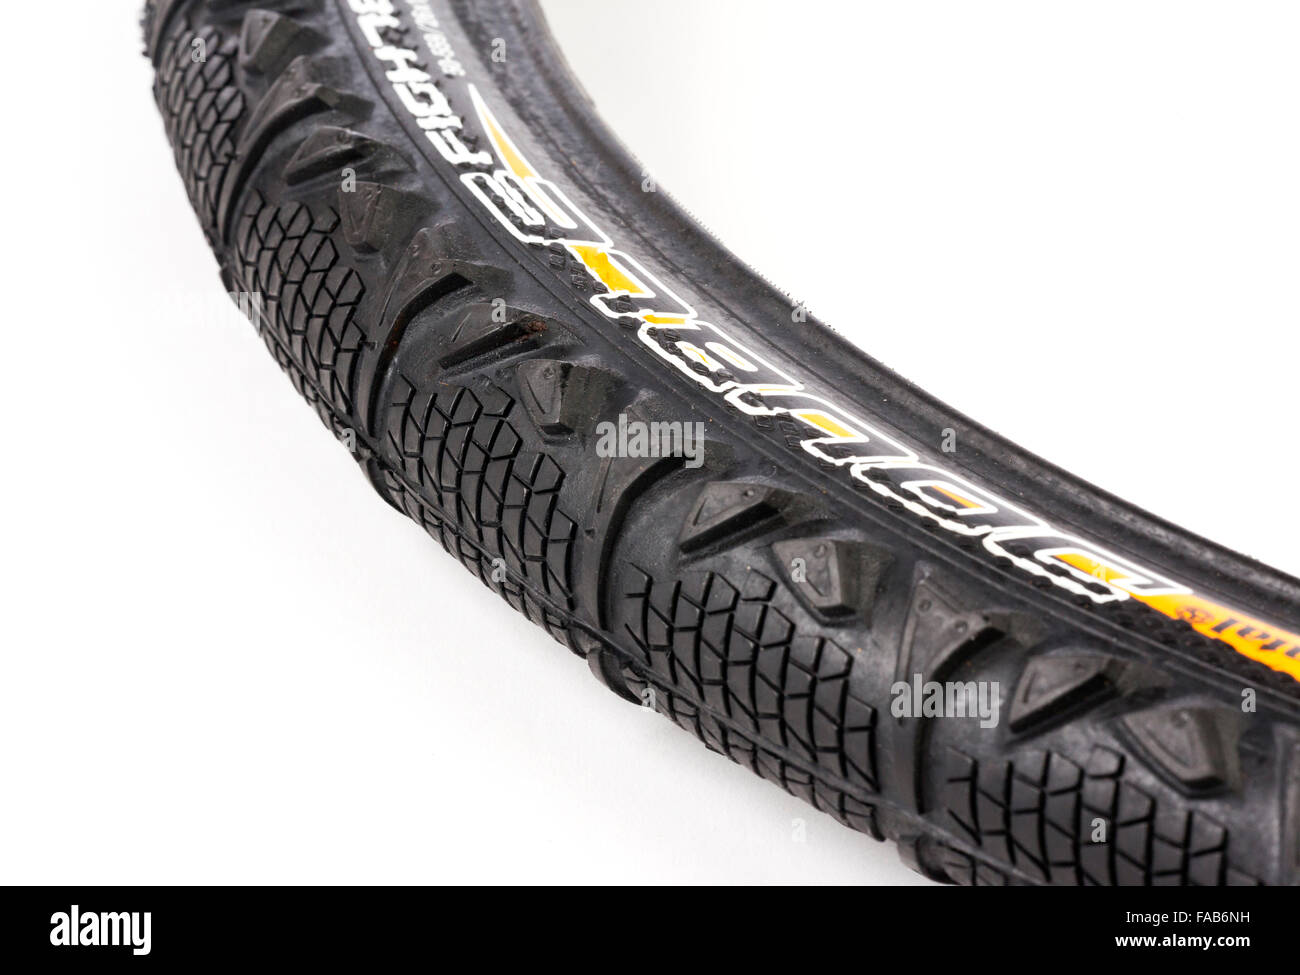 Kautschuk-Fahrradreifen / Reifen Stockfoto